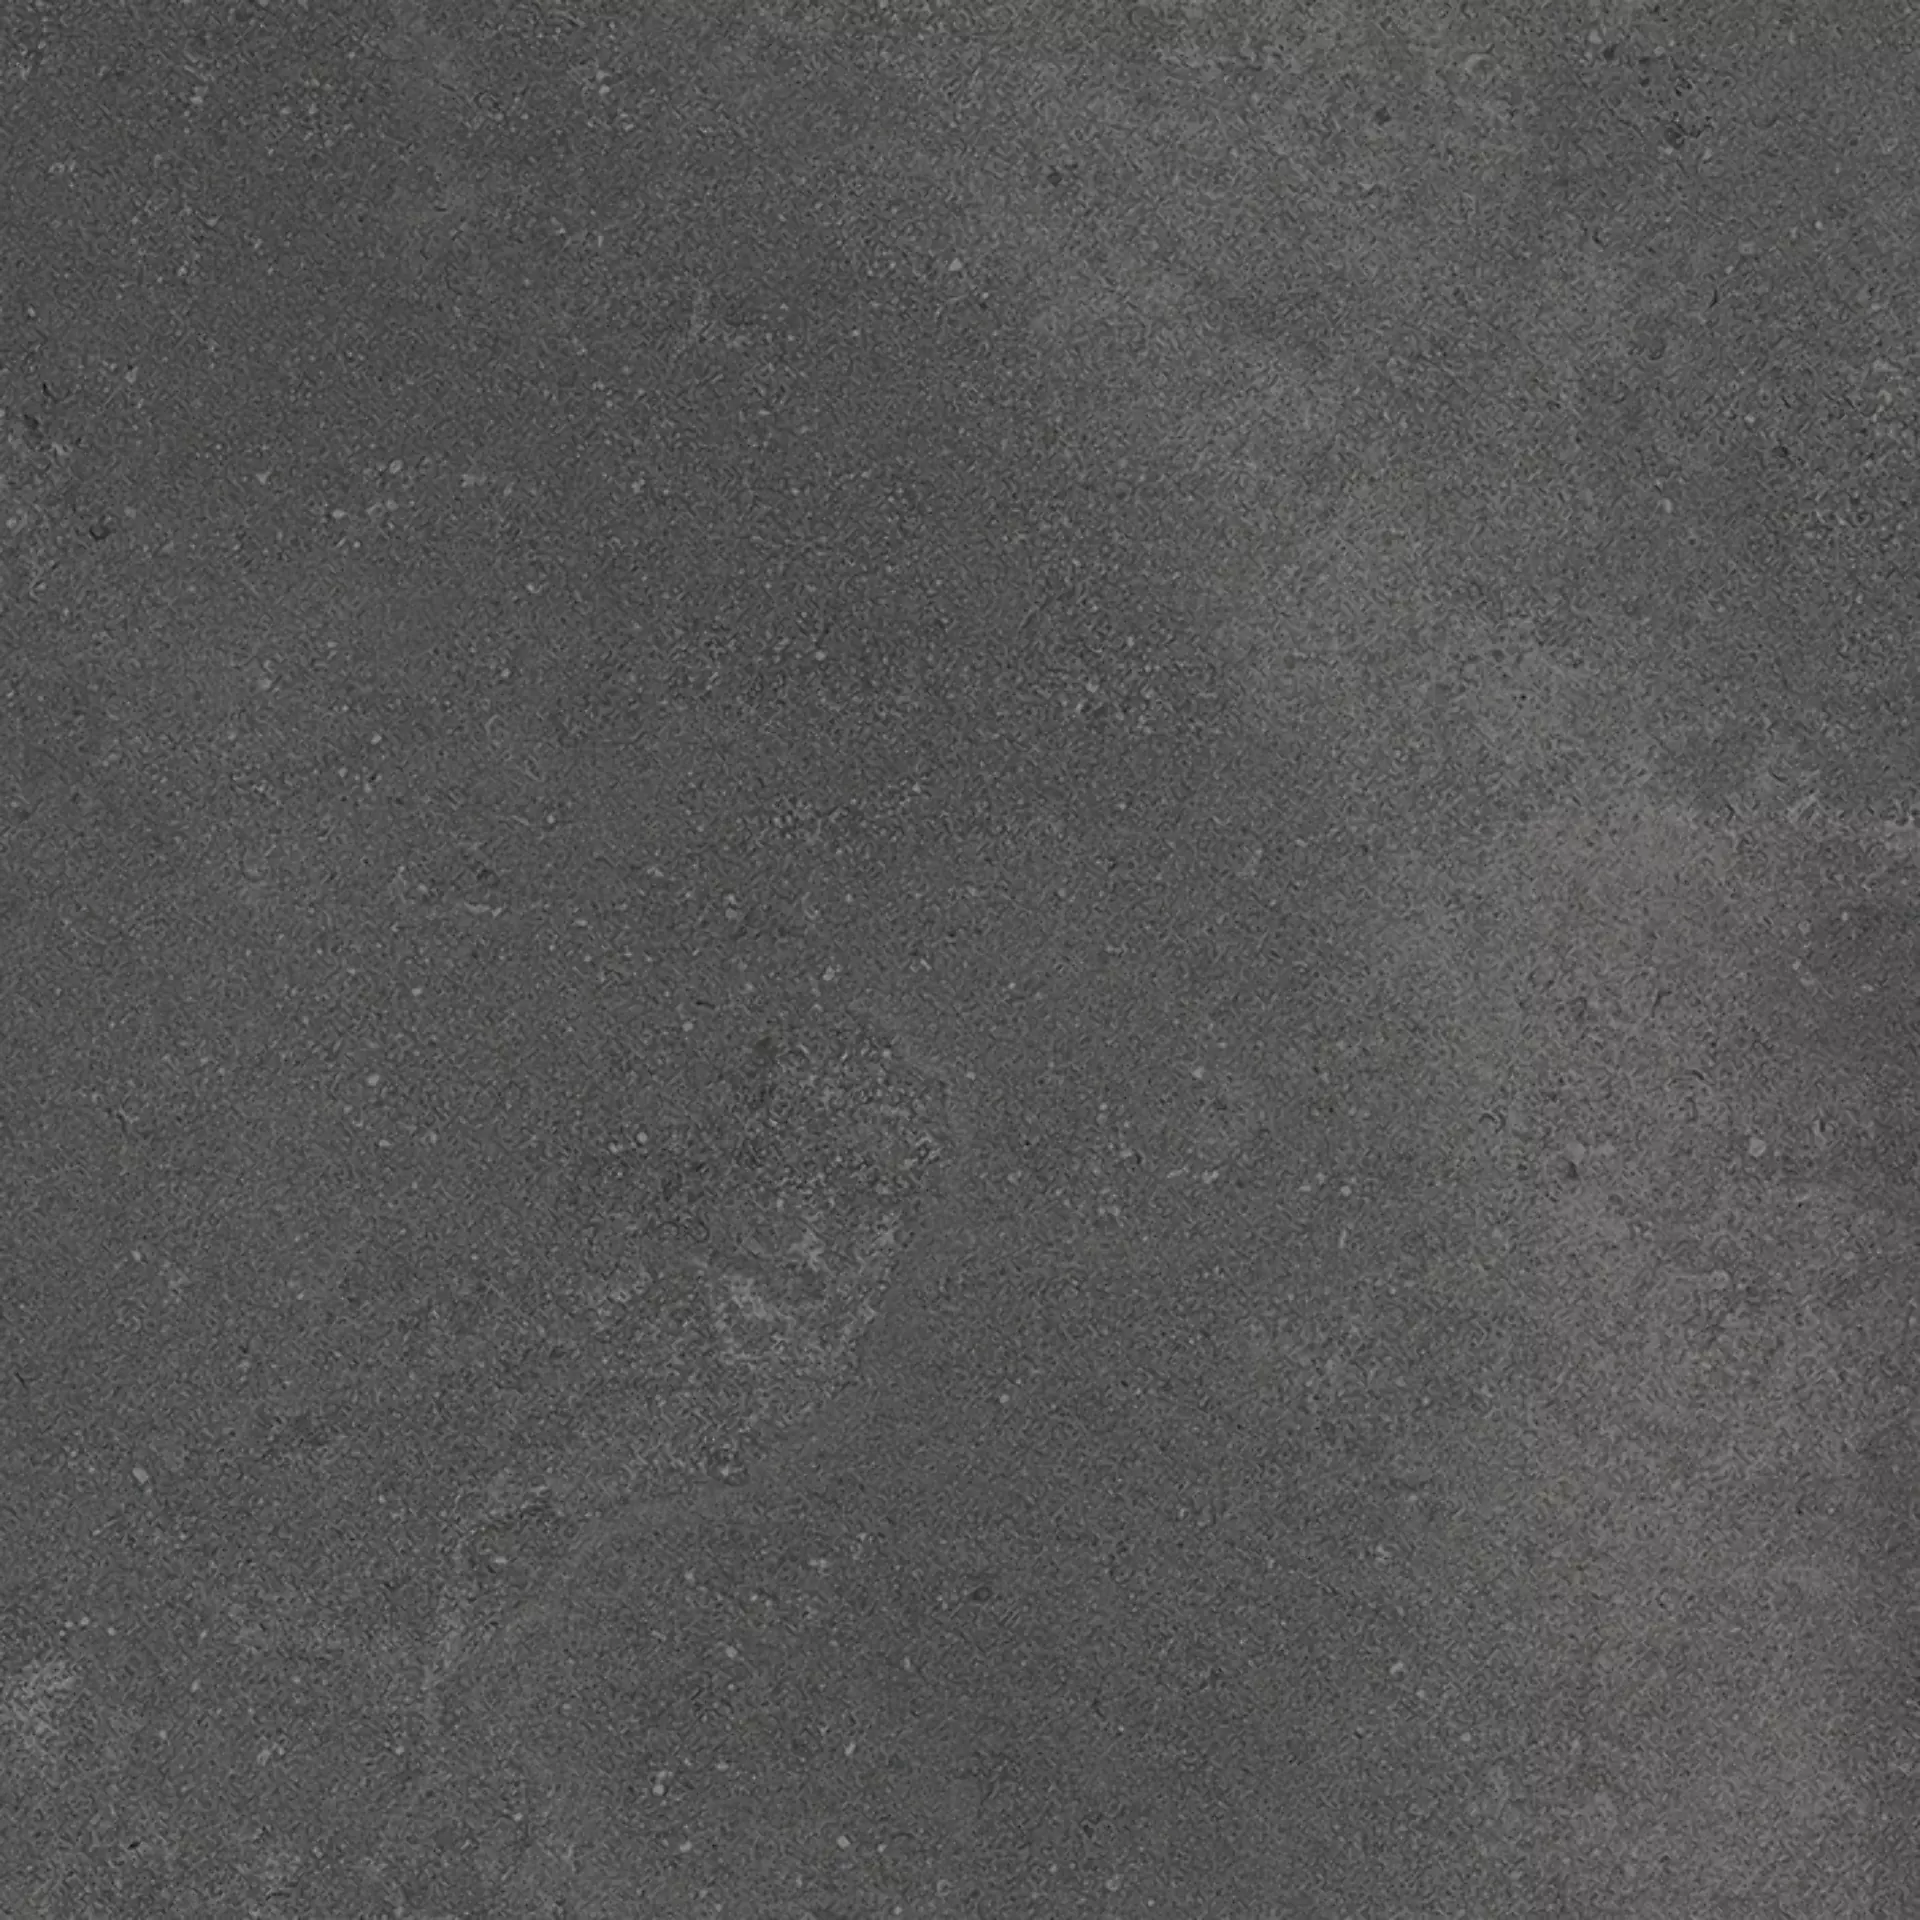 Wandfliese,Bodenfliese Villeroy & Boch Hudson Magma Rough – Polished Magma 2577-SD8L geschliffen 60x60cm rektifiziert 10mm